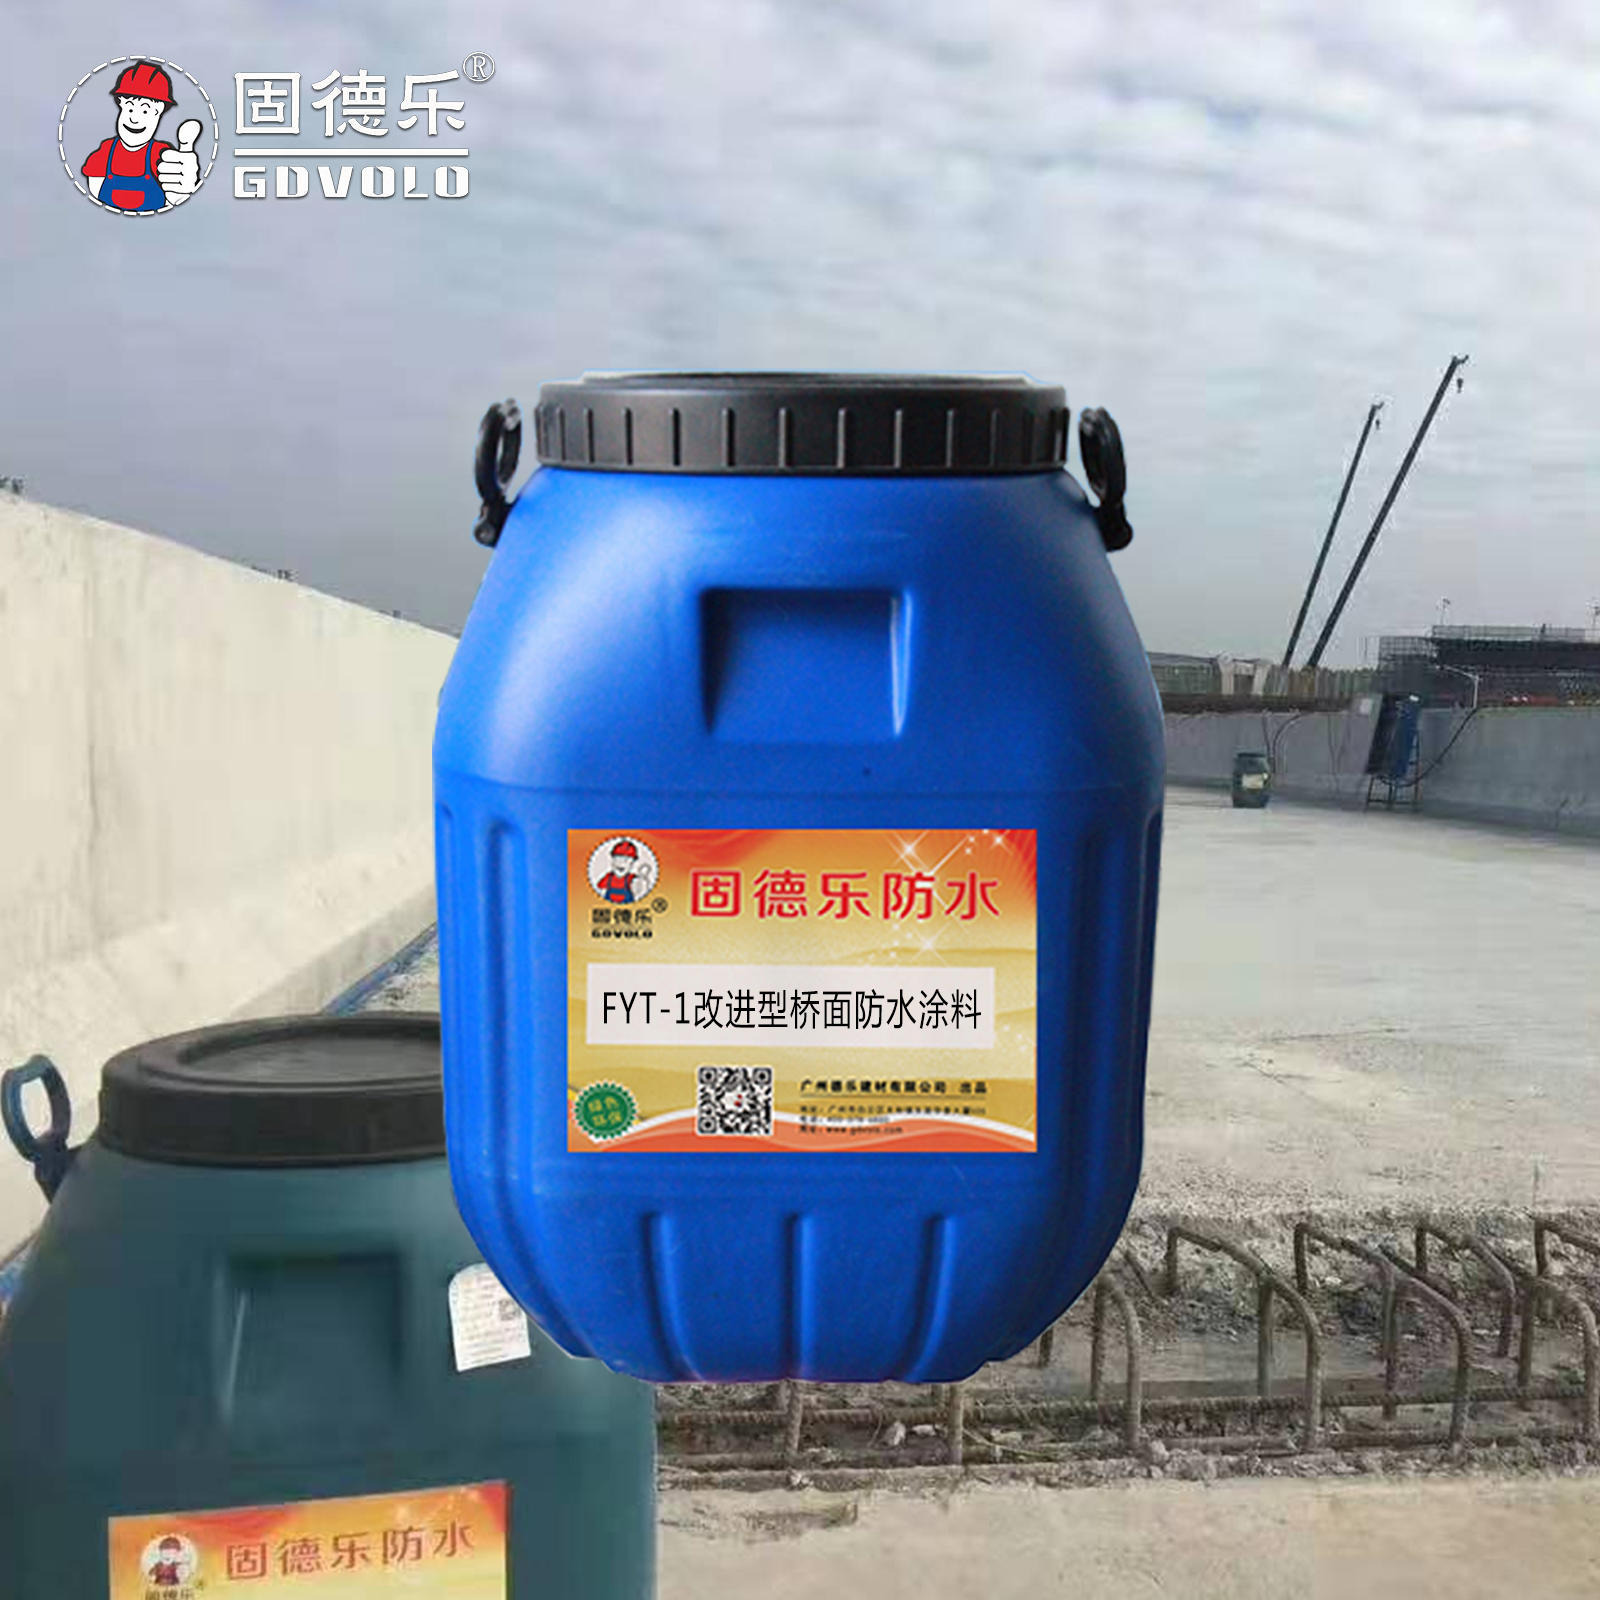 FYT-1沥青桥面防水涂料参数、用法、用量  固德乐专用生产防水厂家报价